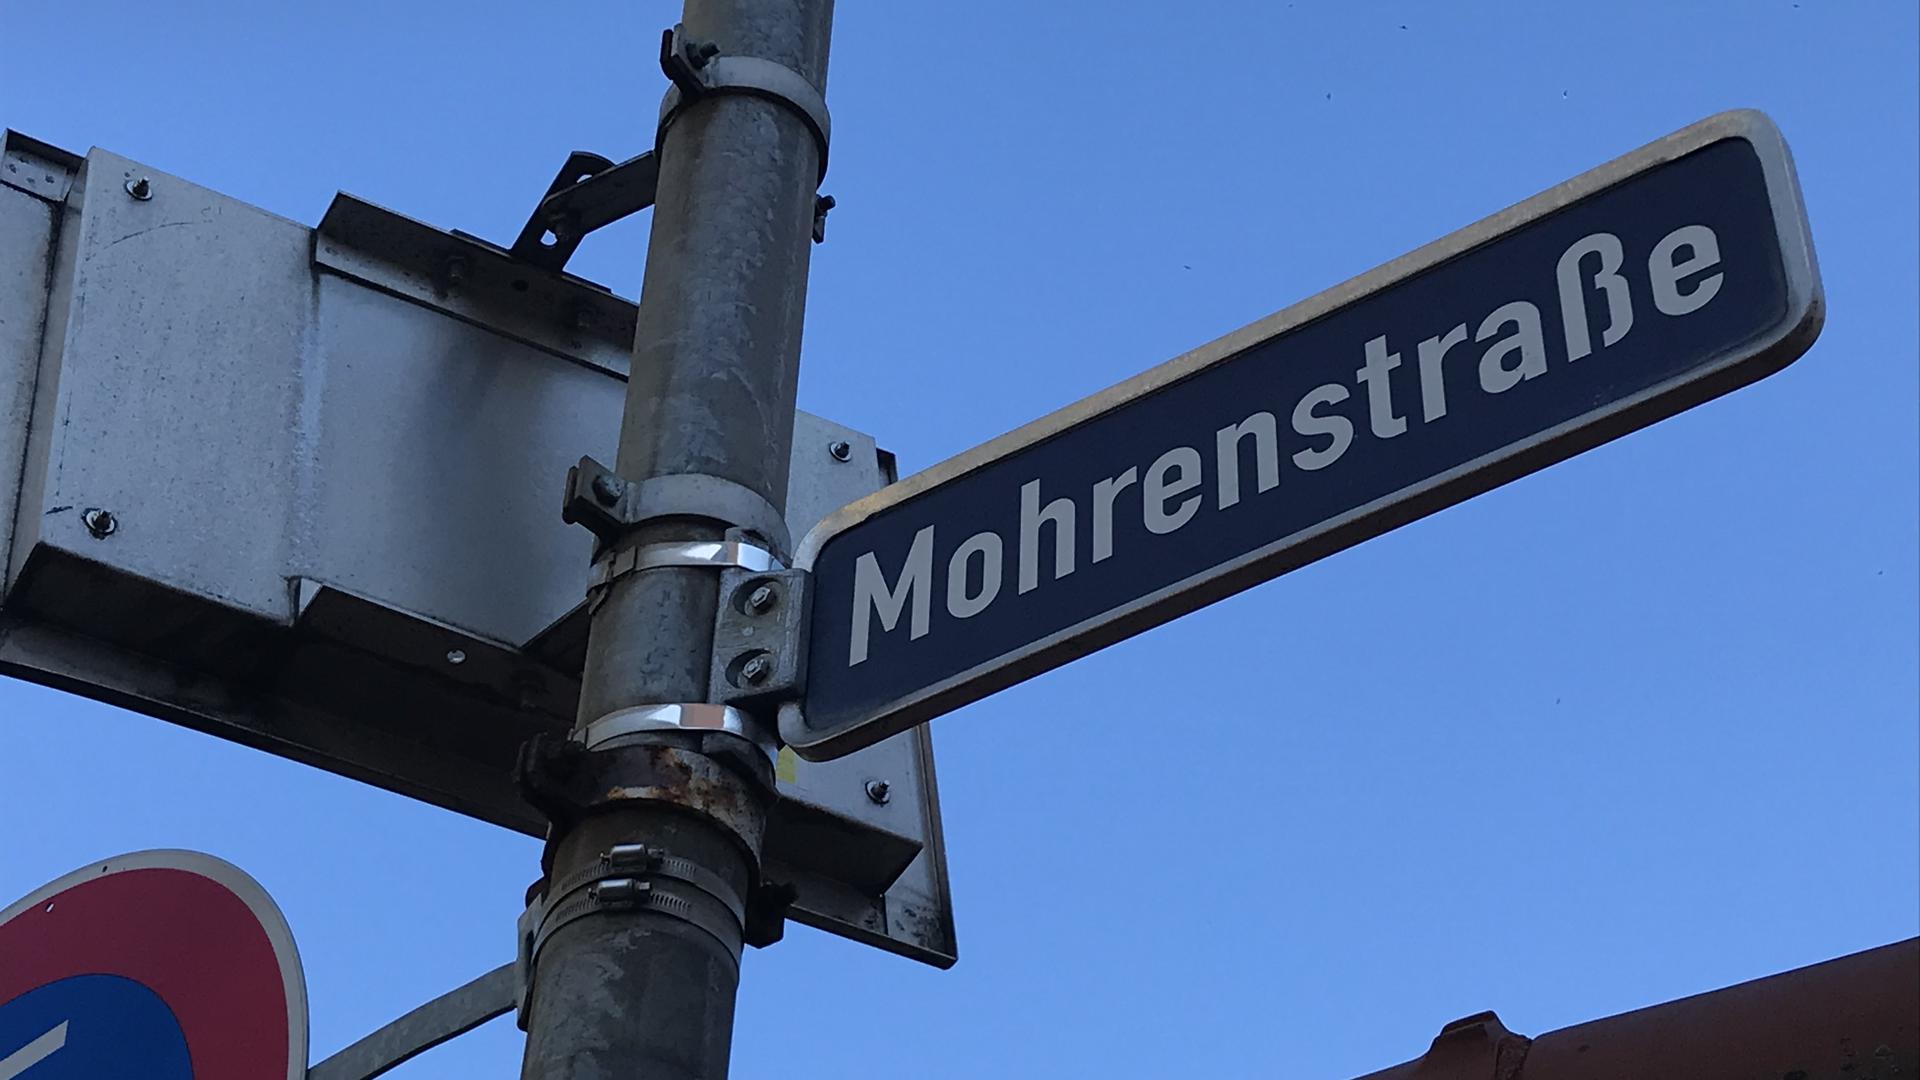 Den Namen Mohrenstraße in Ettlingen kritisiert eine Initiative in Ettlingen. Aktivisten wollen einen Umbenennung.